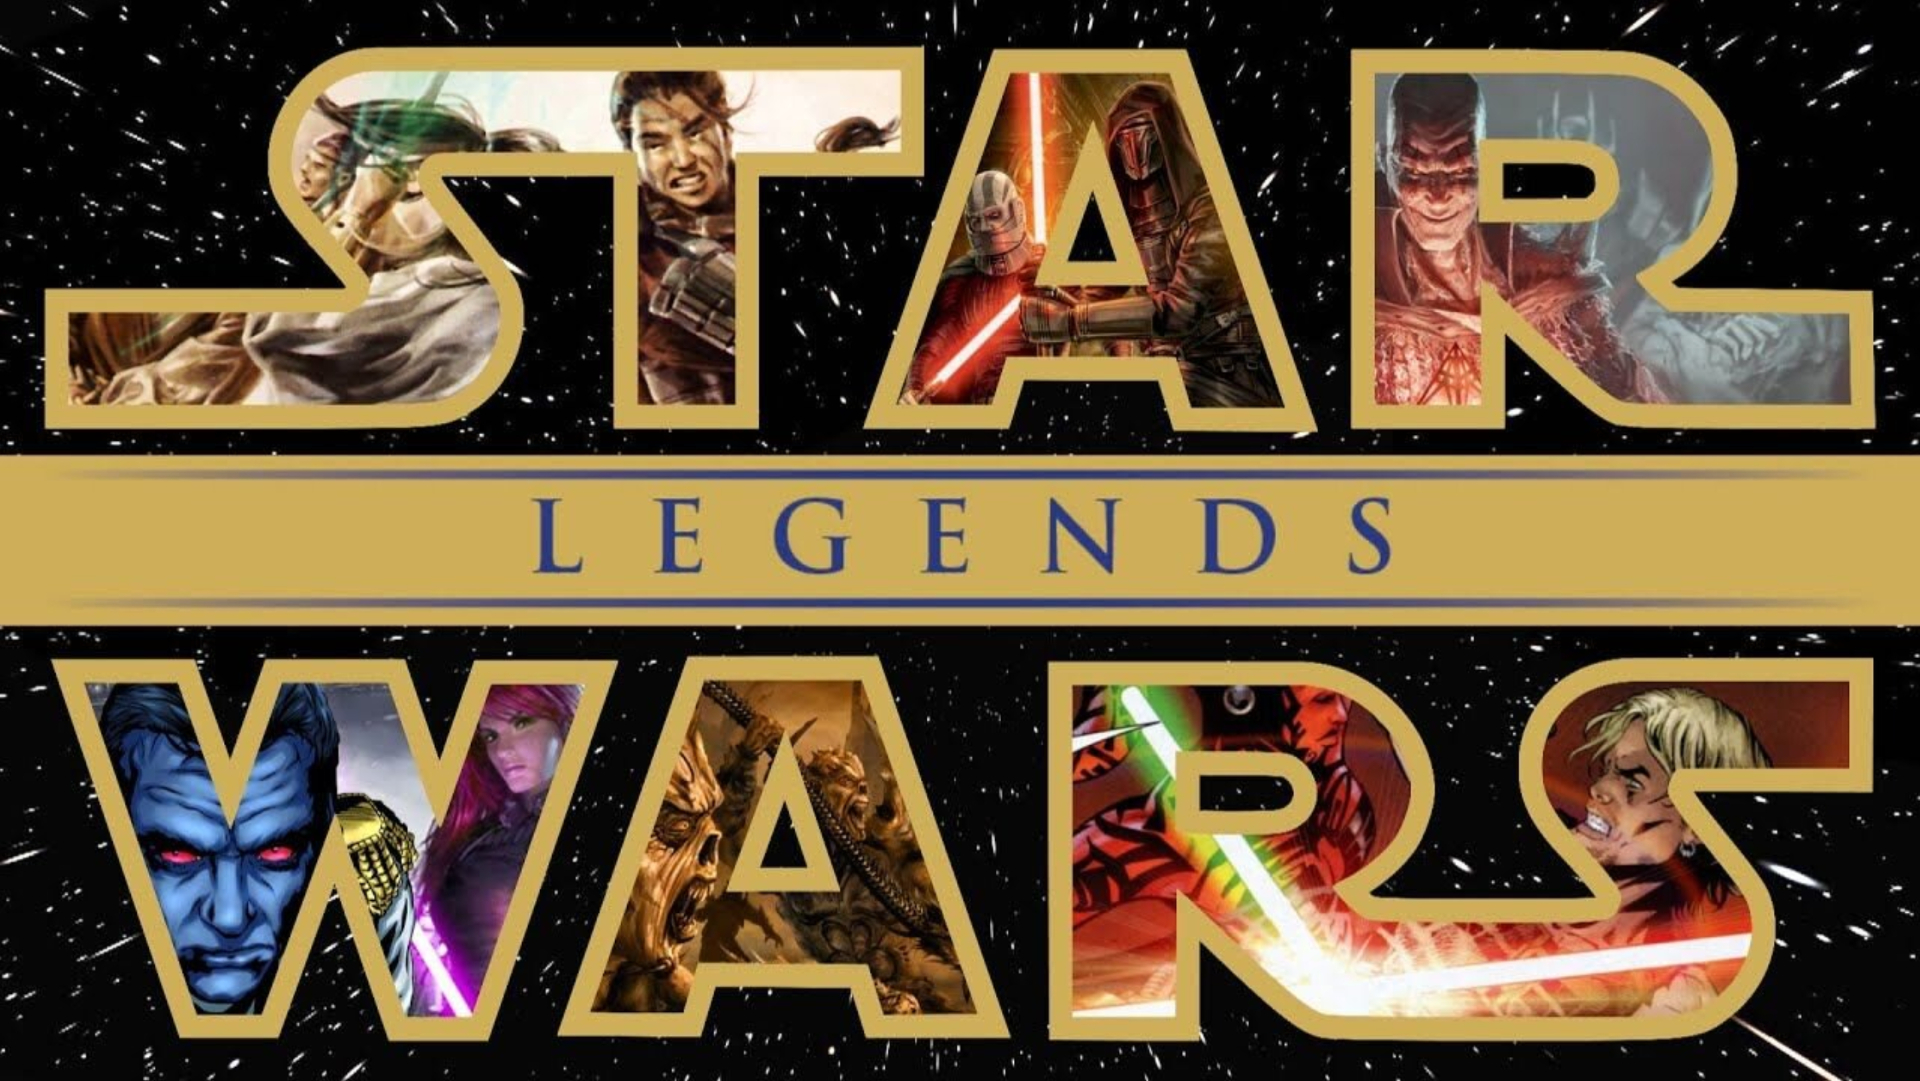 El logo de la continuidad de Star Wars Legends con arte de varias historias.